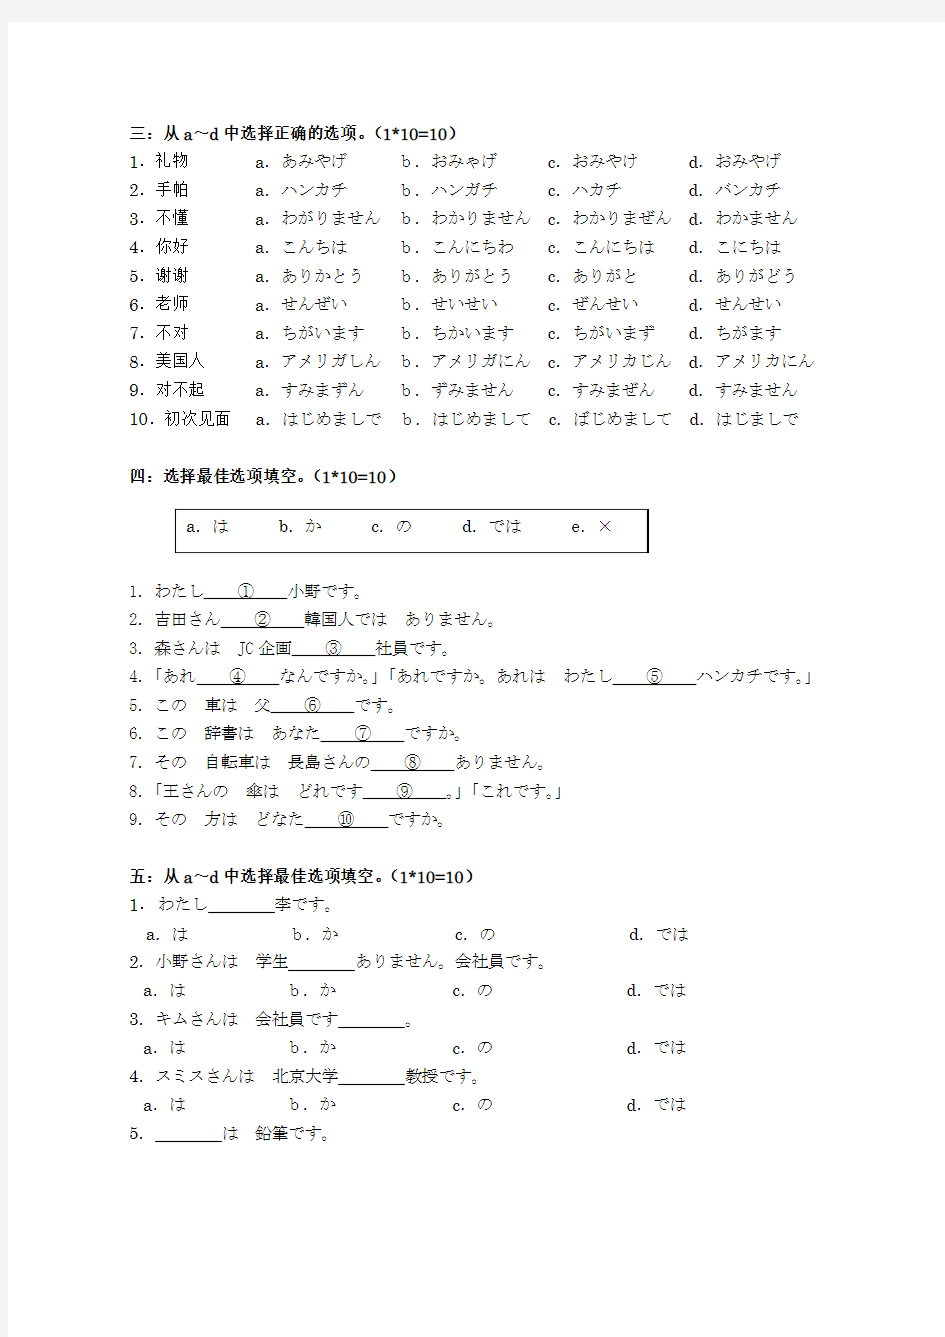 新版标准日本语初级上册第一単元(1～2课)测试